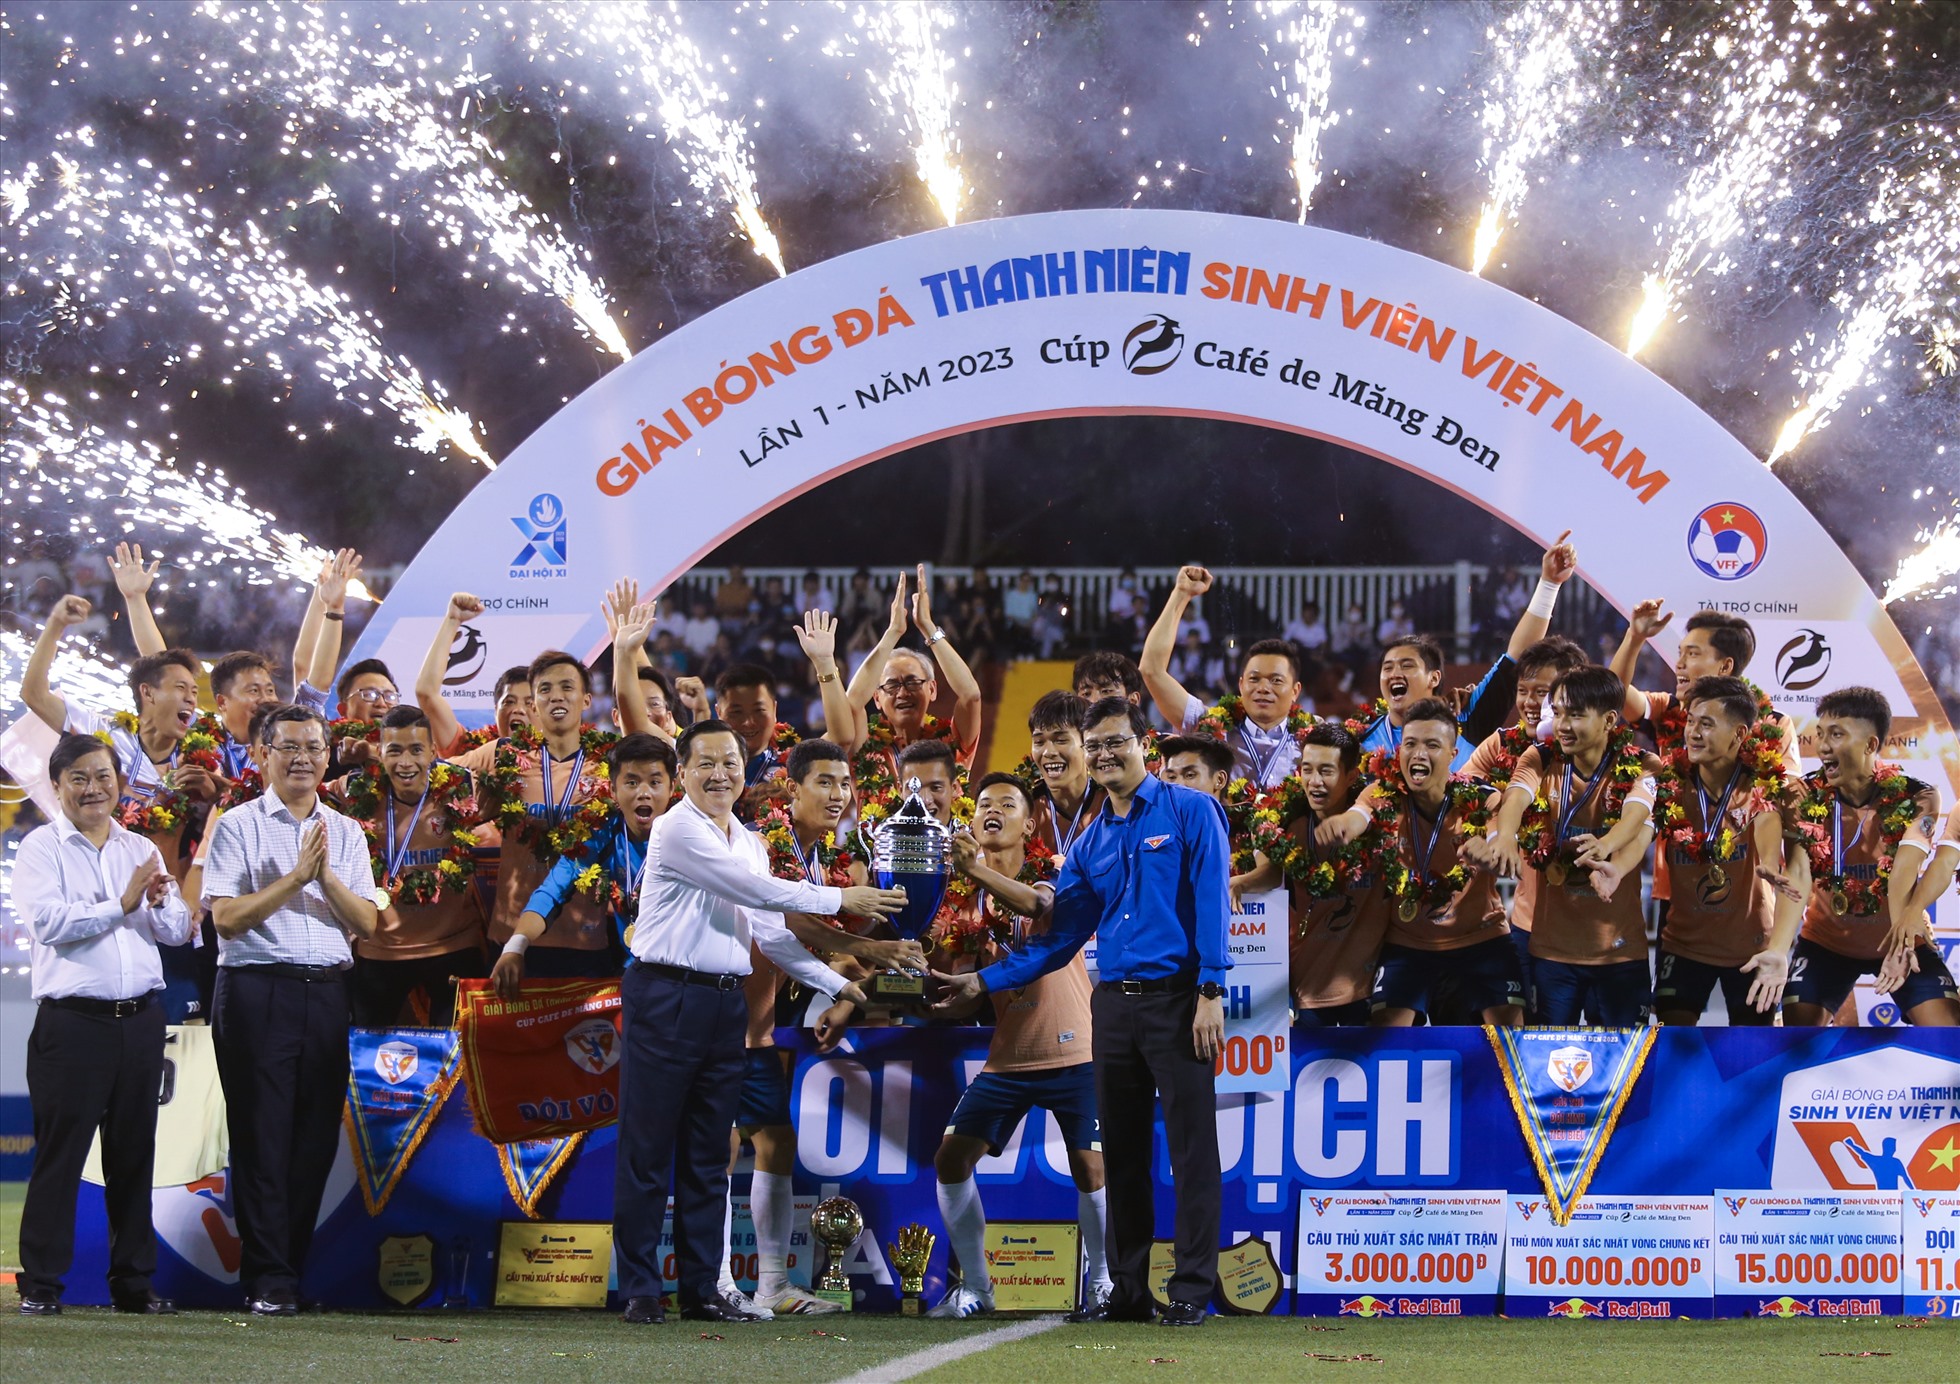 Nhà vô địch giải bóng đá Thanh Niên Sinh viên Việt Nam 2023 vinh dự nhận chiếc cúp danh giá từ Phó Thủ tướng Chính phủ Lê Minh Khái.